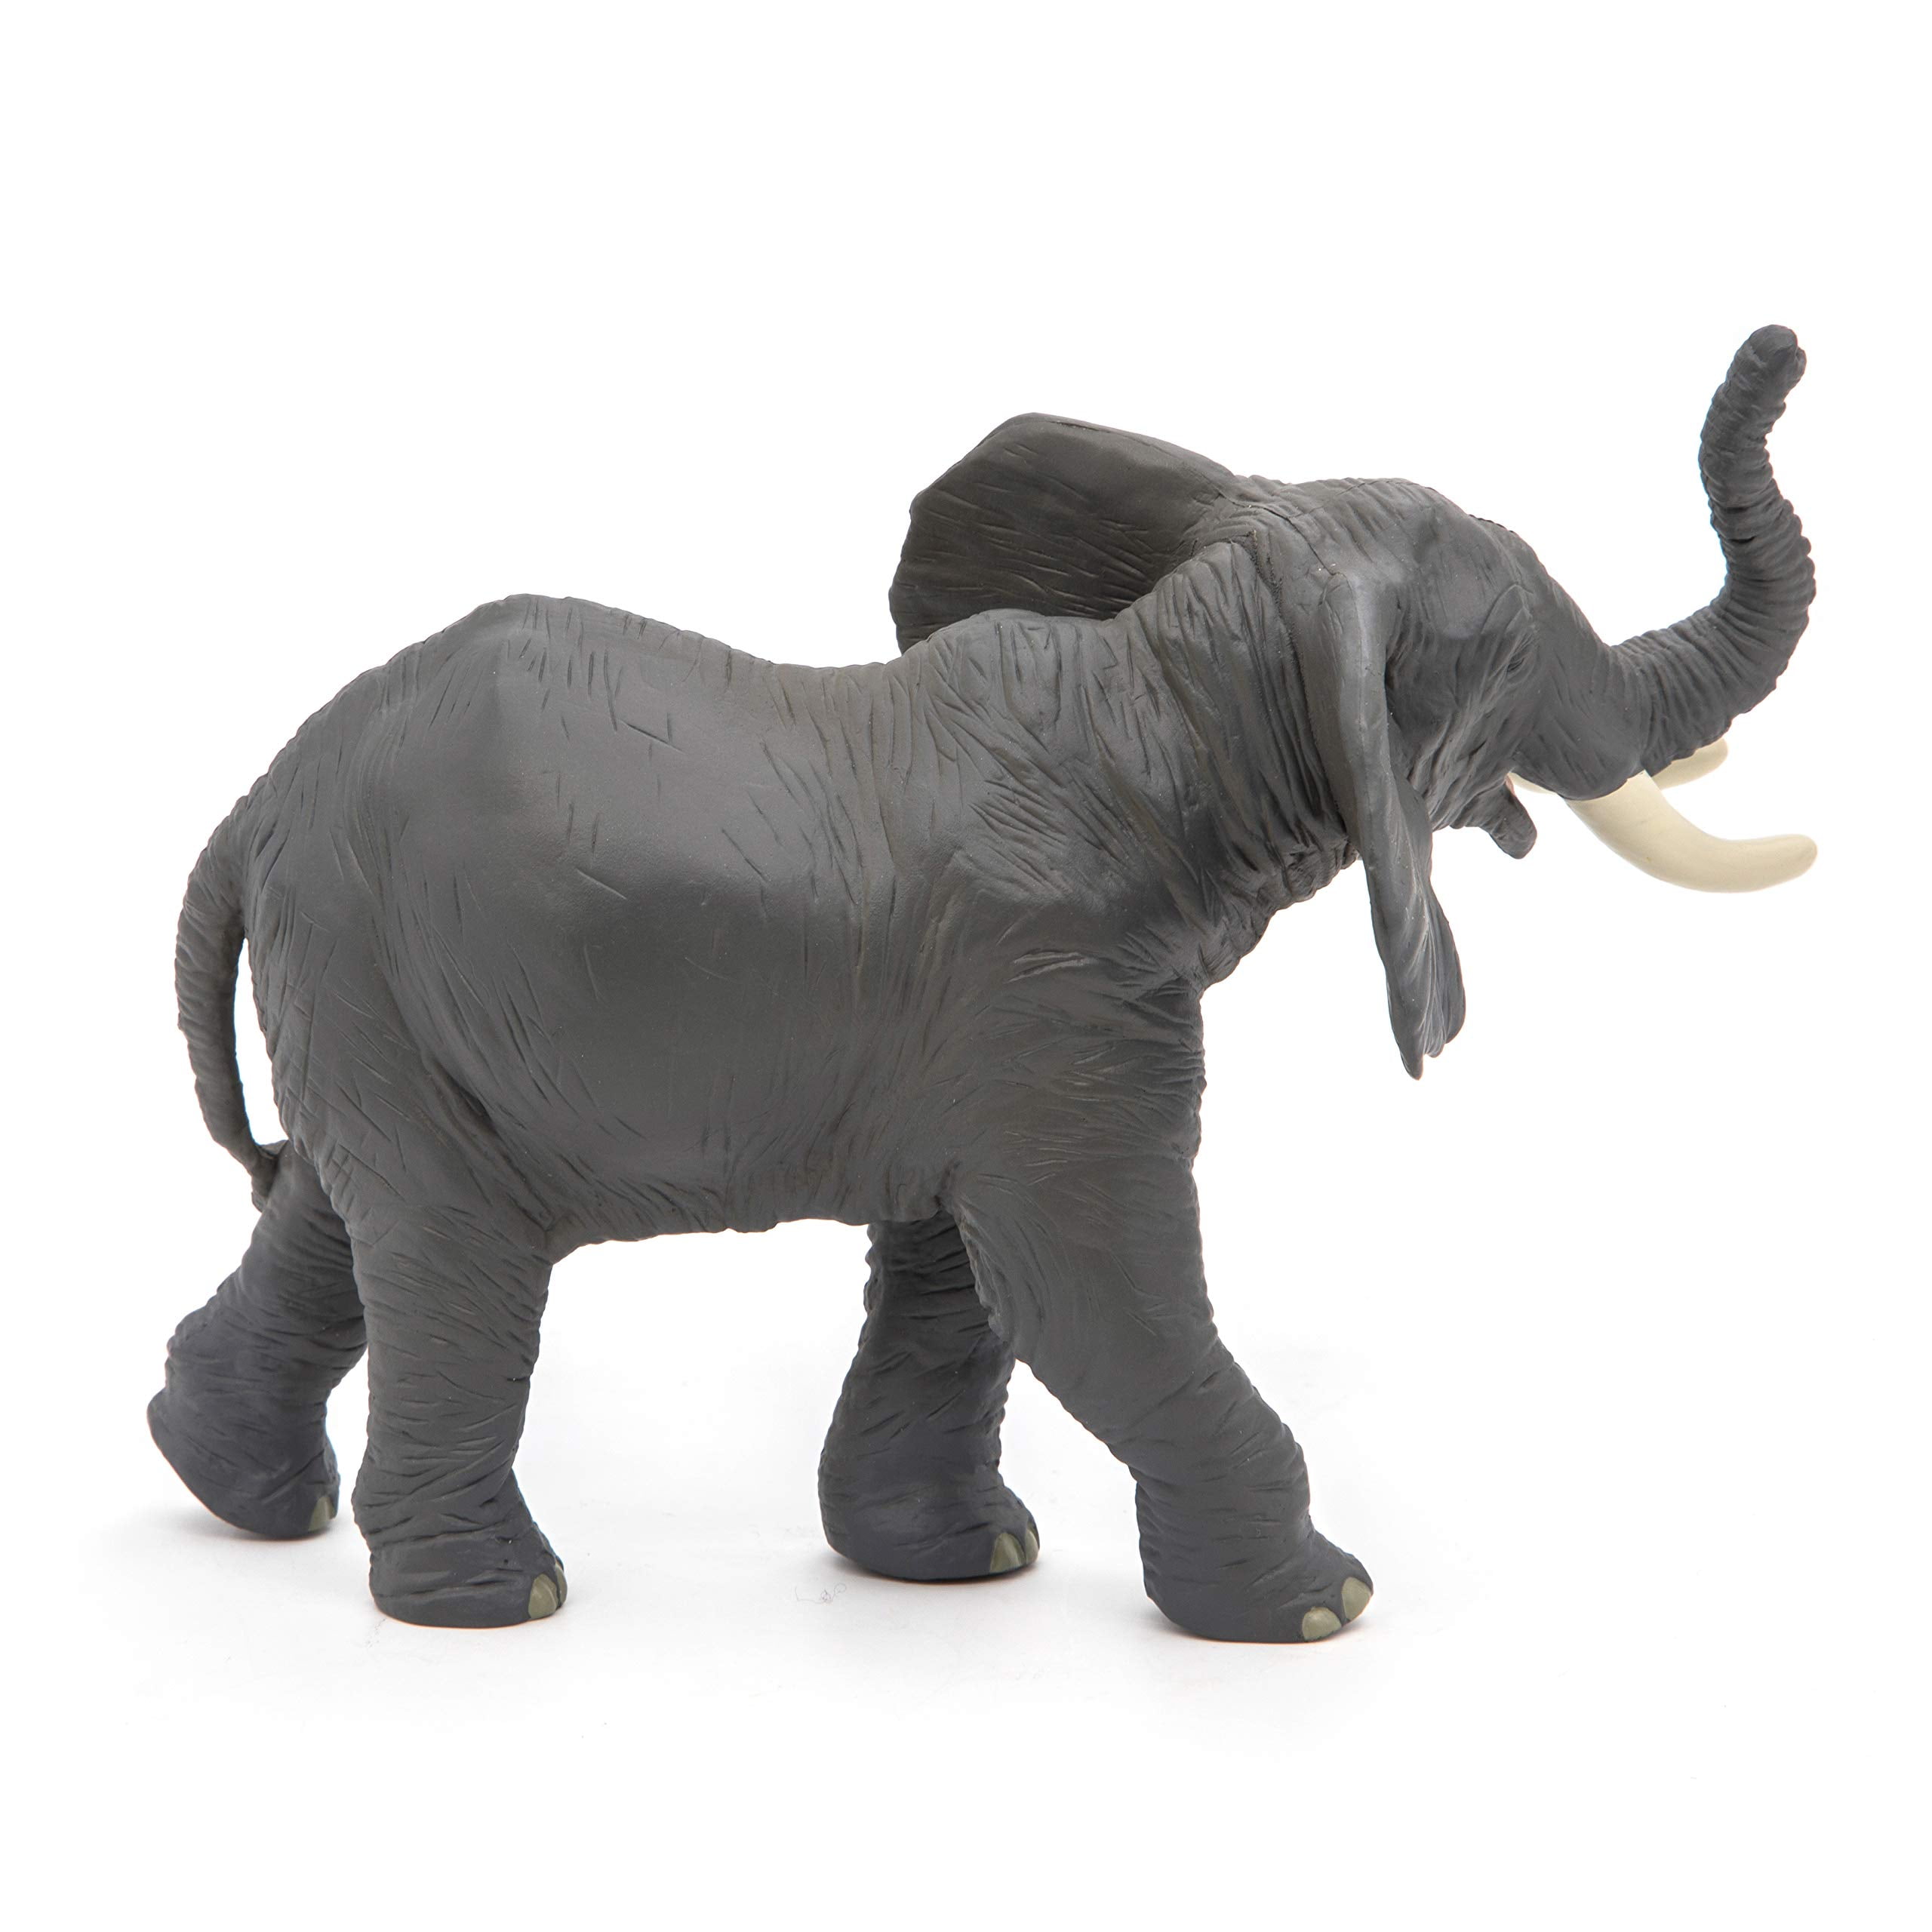 *NEW* PAPO 50041 Papo Trumpeting Elephant 12cm x 18cm 